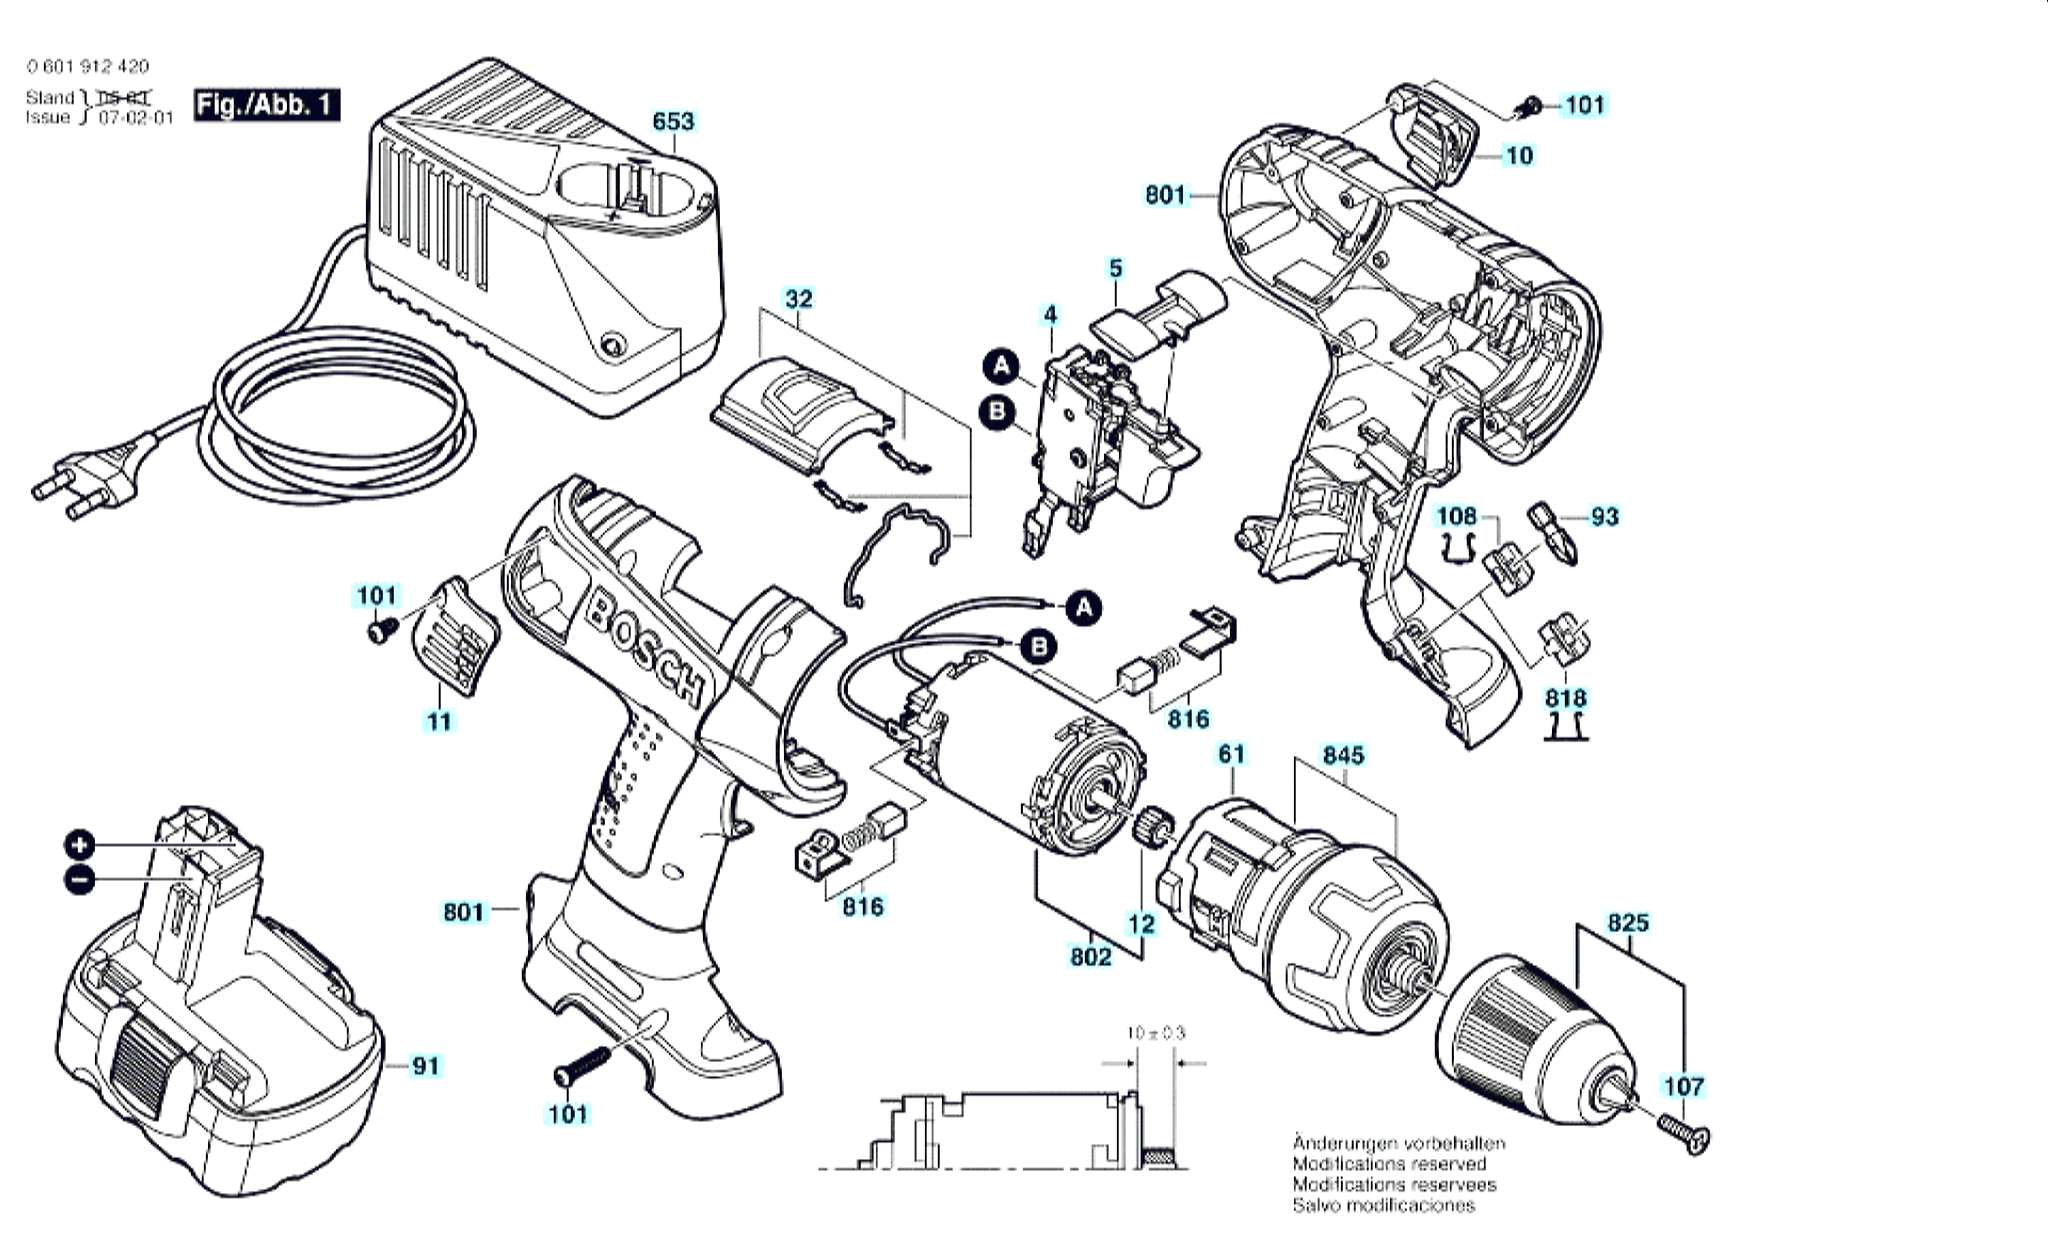 Запчасти, схема и деталировка Bosch GSR 14,4 VE-2 (ТИП 0601912420)